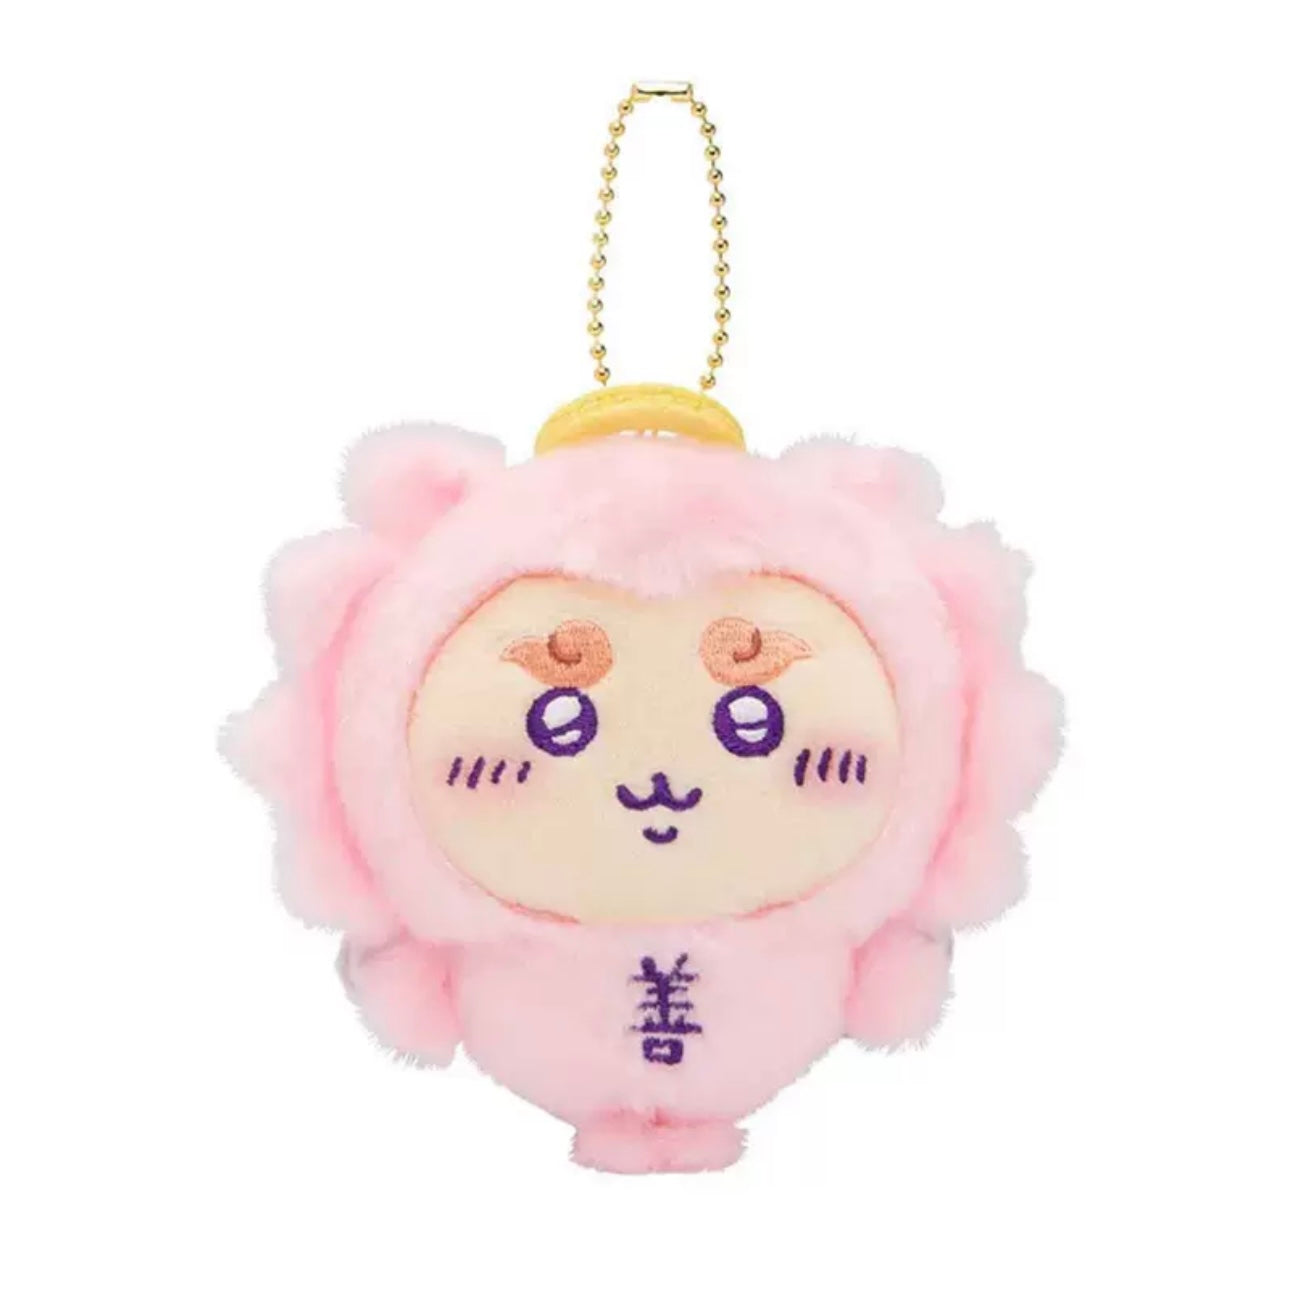 Japan ChiiKawa Angel Pink Devil Purple Keychain | ChiiKawa Hachiware Usagi Momonga Kurimanju Shisa - Mini Plush Doll